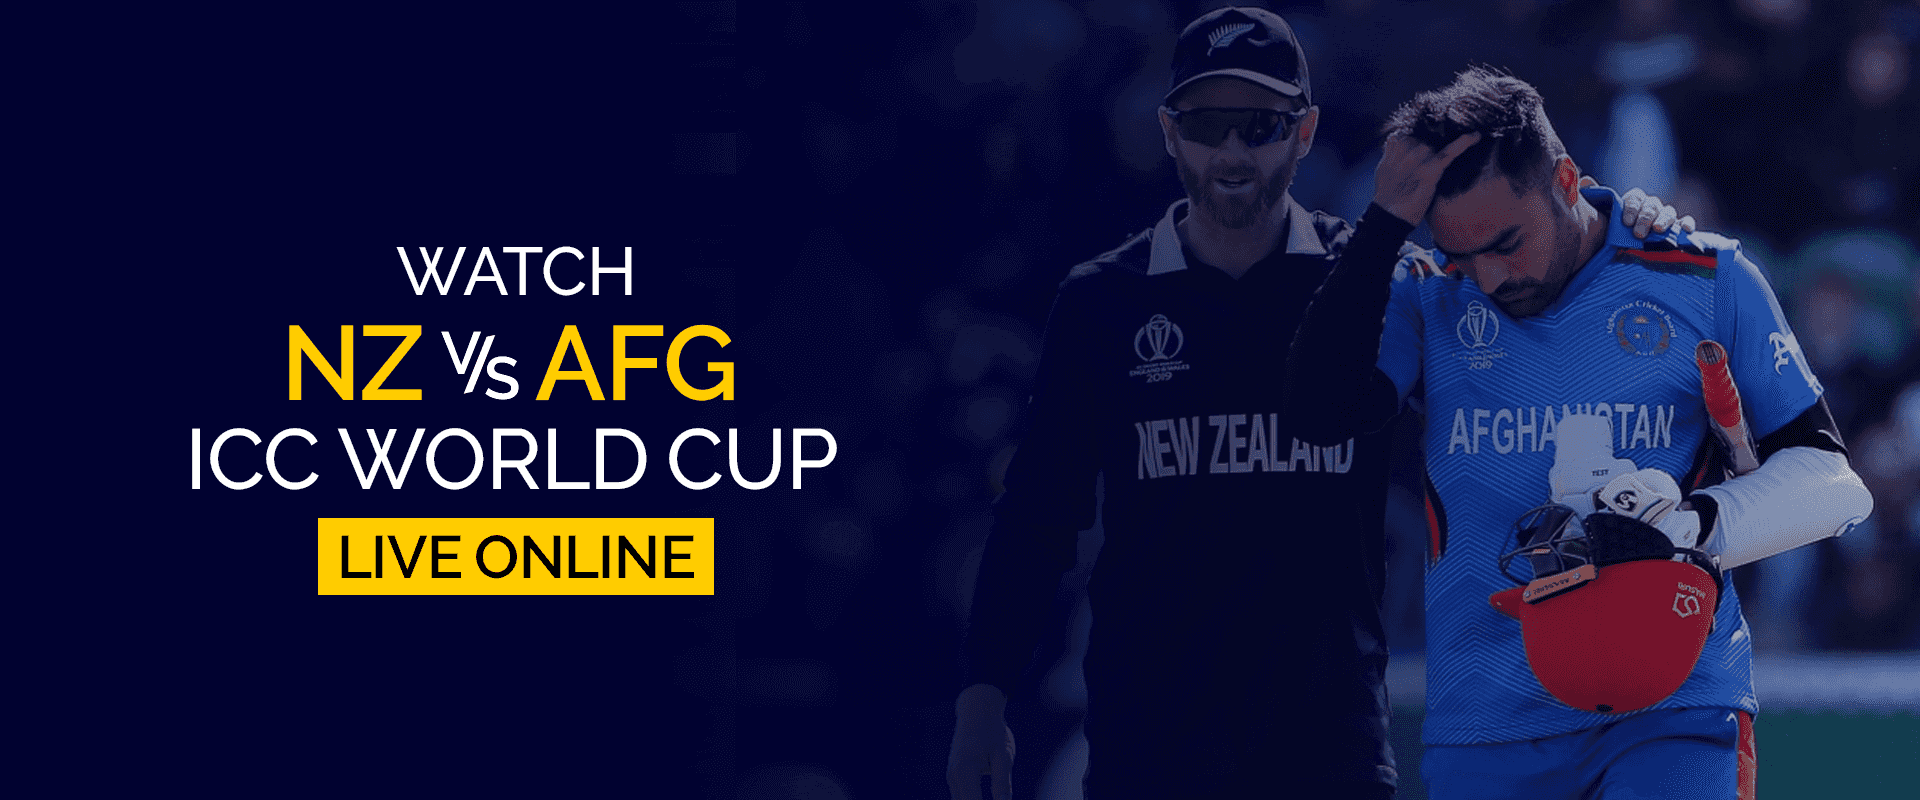 Vea la Copa Mundial ICC Nueva Zelanda vs Afganistán en vivo en línea